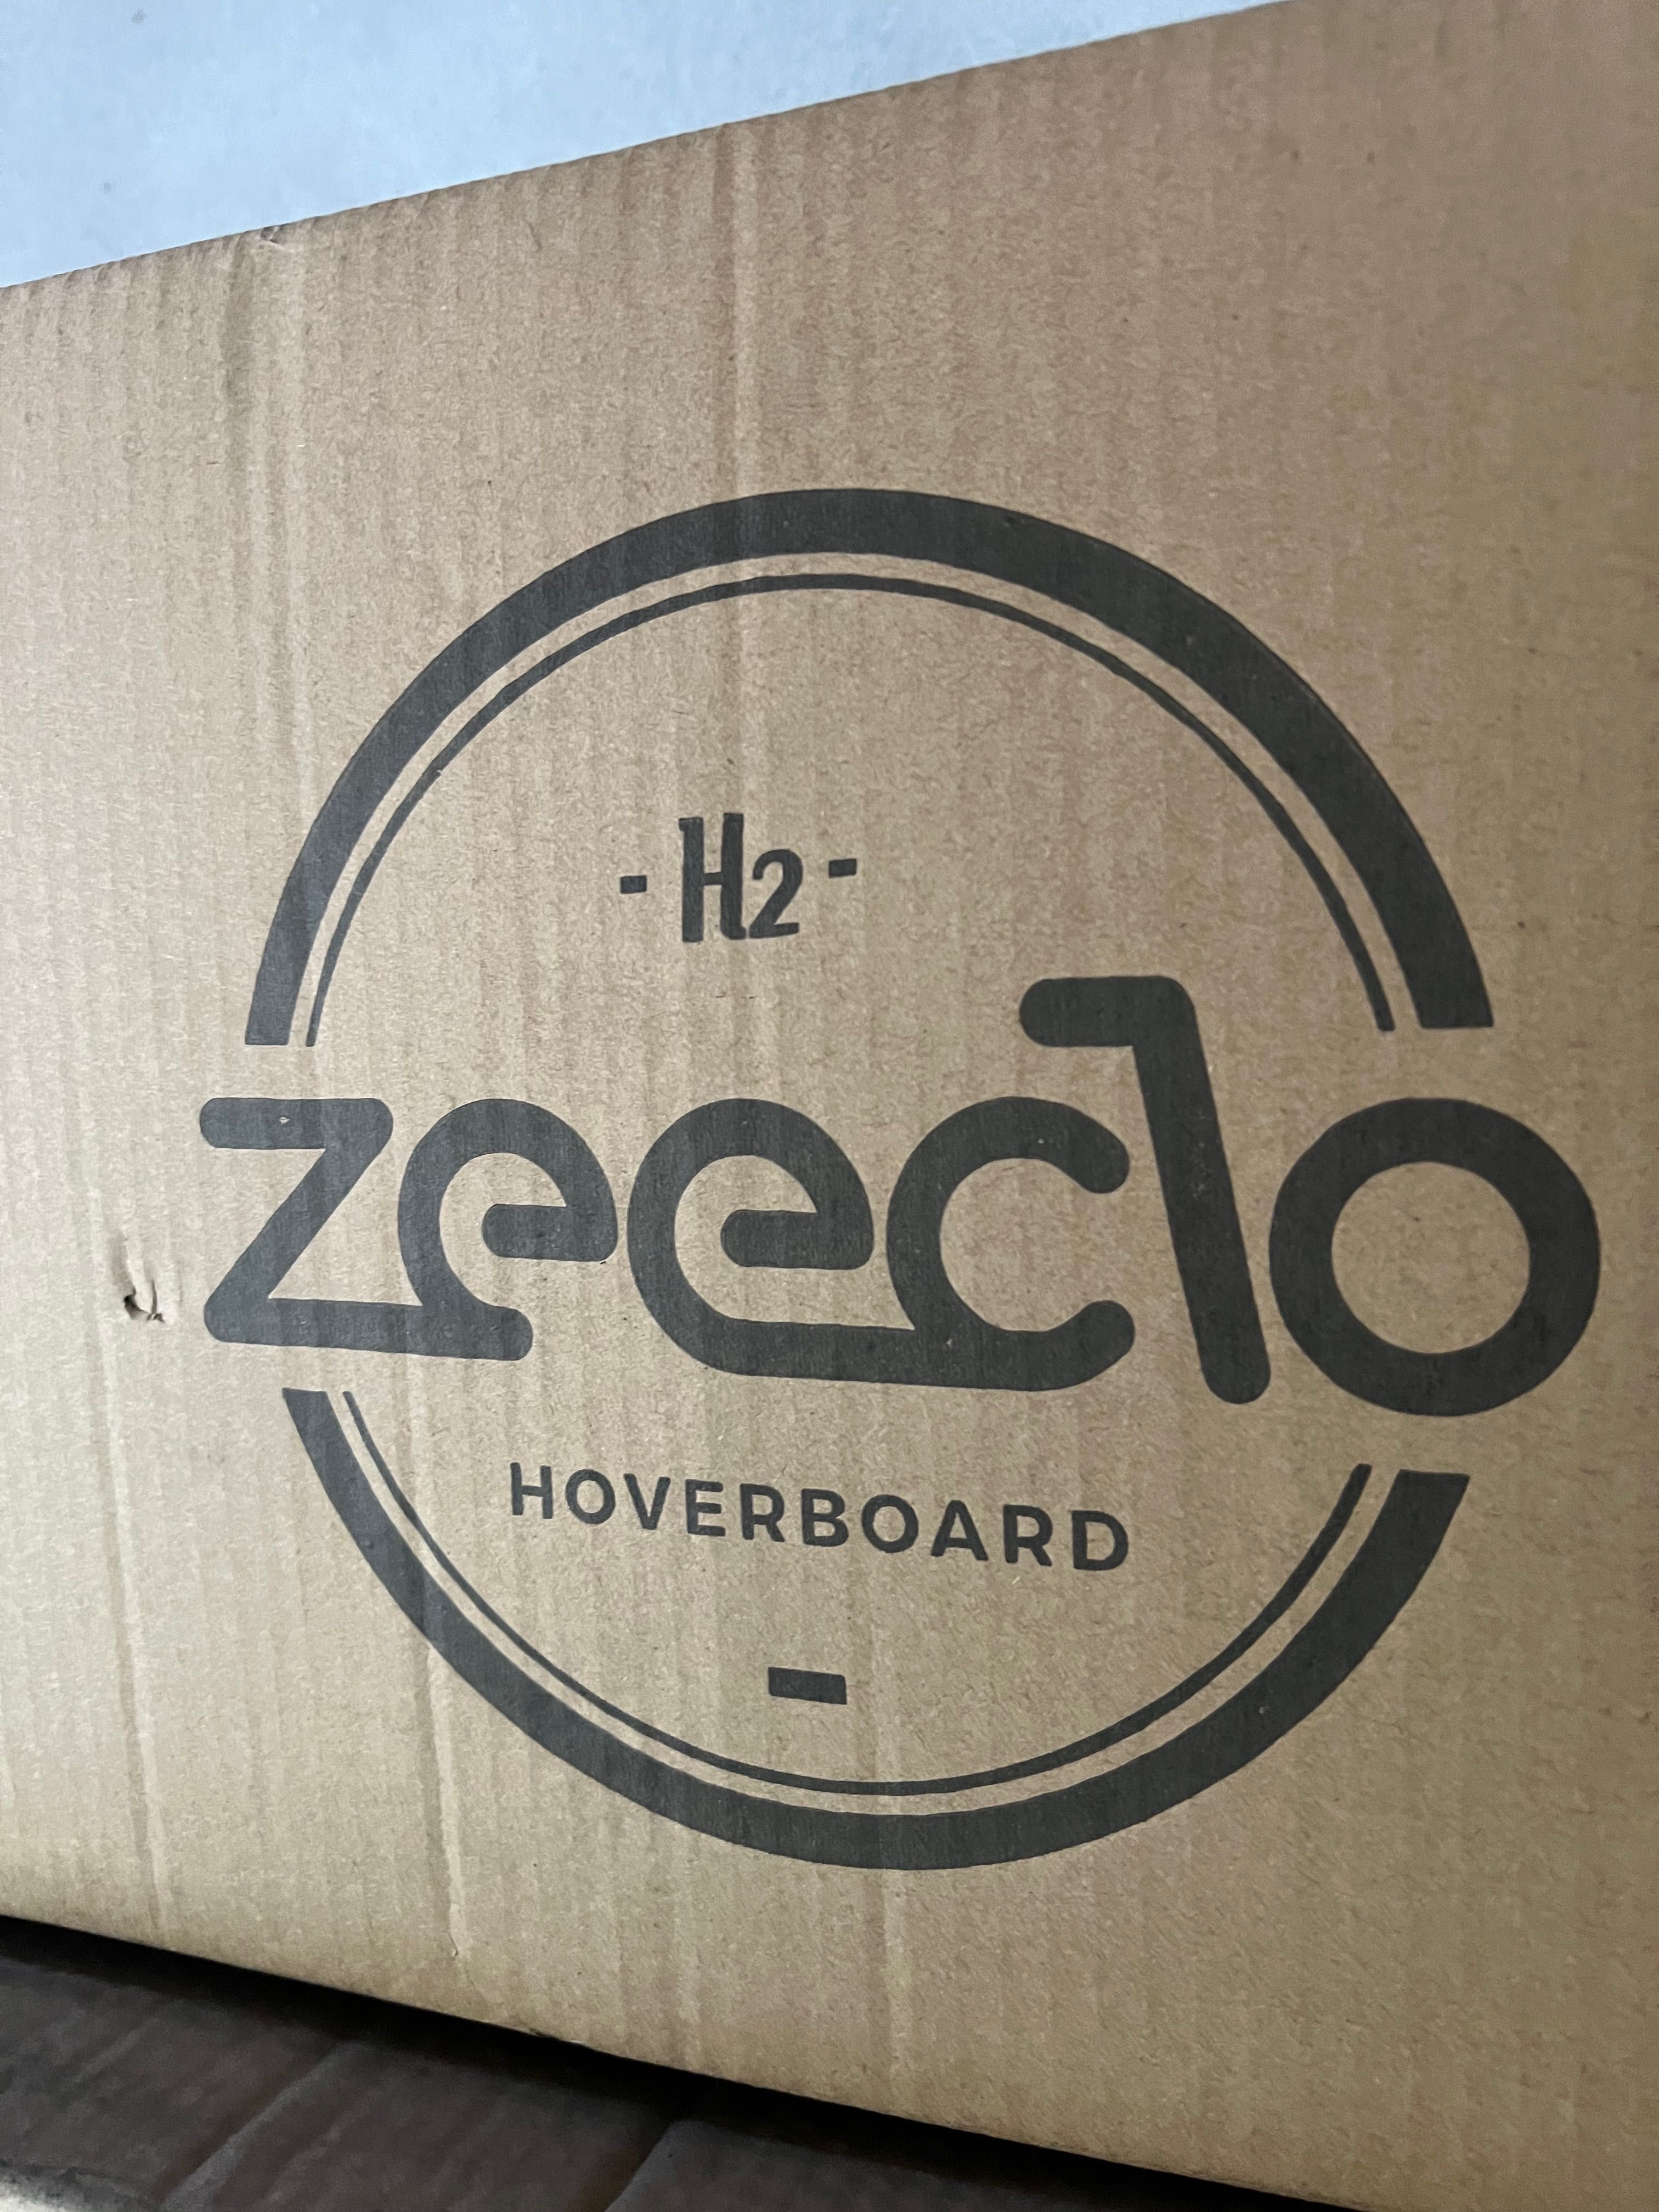 Hoverboard UrbanGlide 100  Zeeclo H2